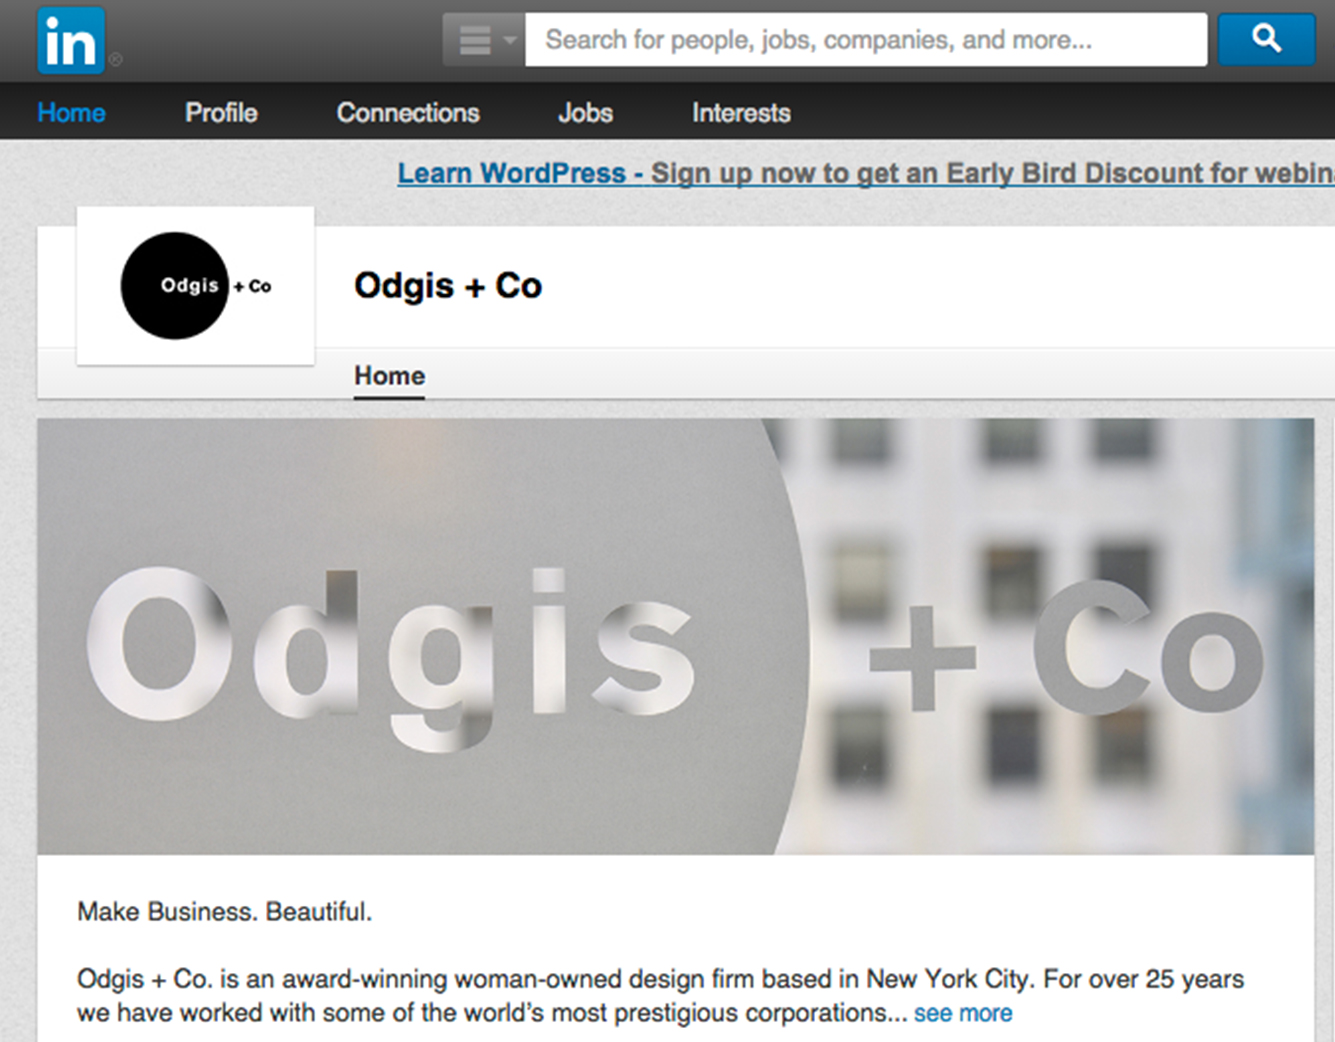 Odigs + Co's LinkedIn